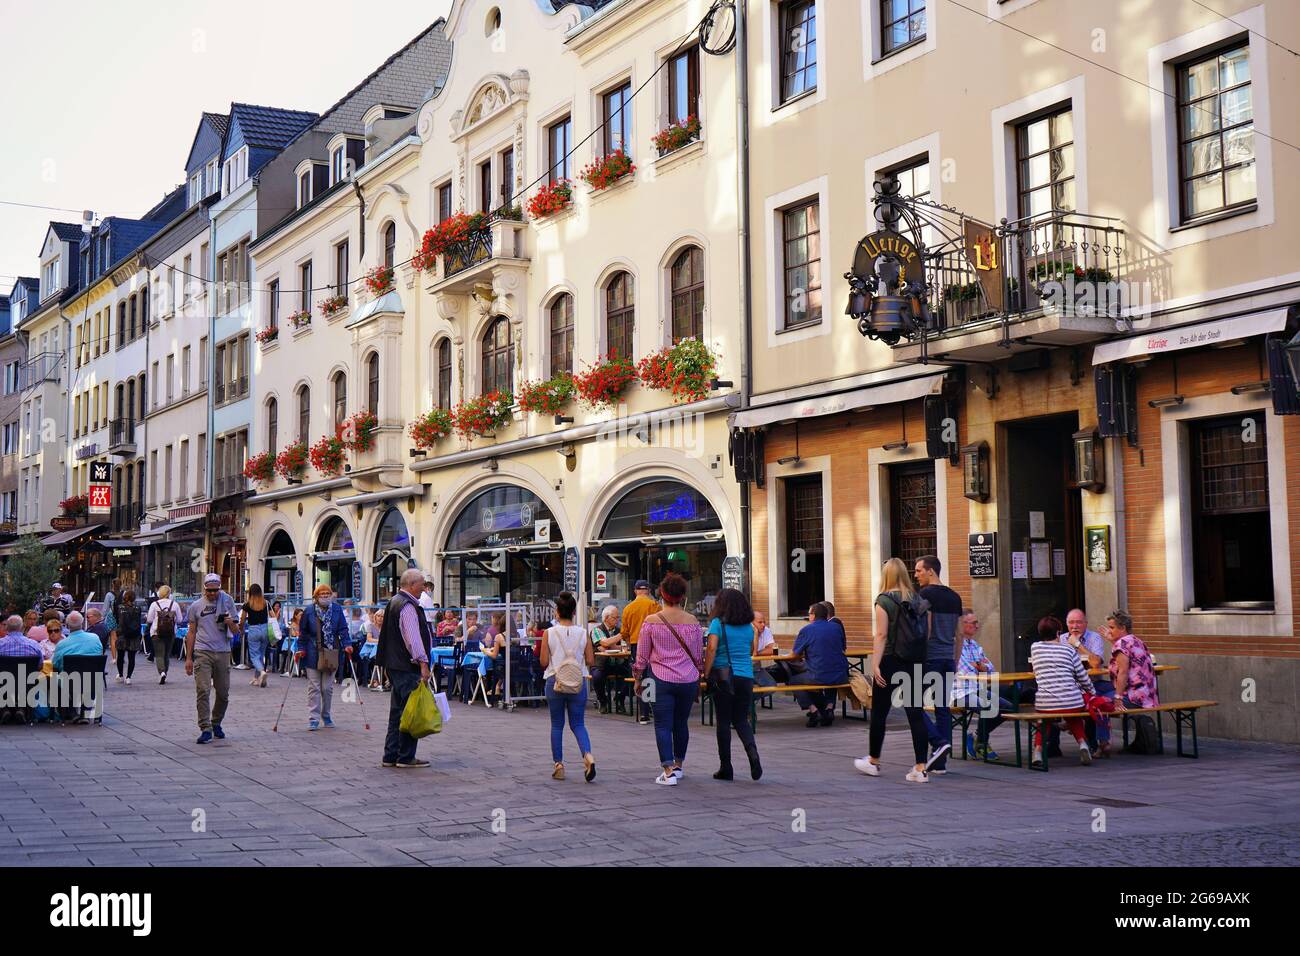 La Düsseldorf vecchia con la birreria Uerige e il ristorante all'aperto. La città vecchia è una popolare zona turistica. Foto Stock